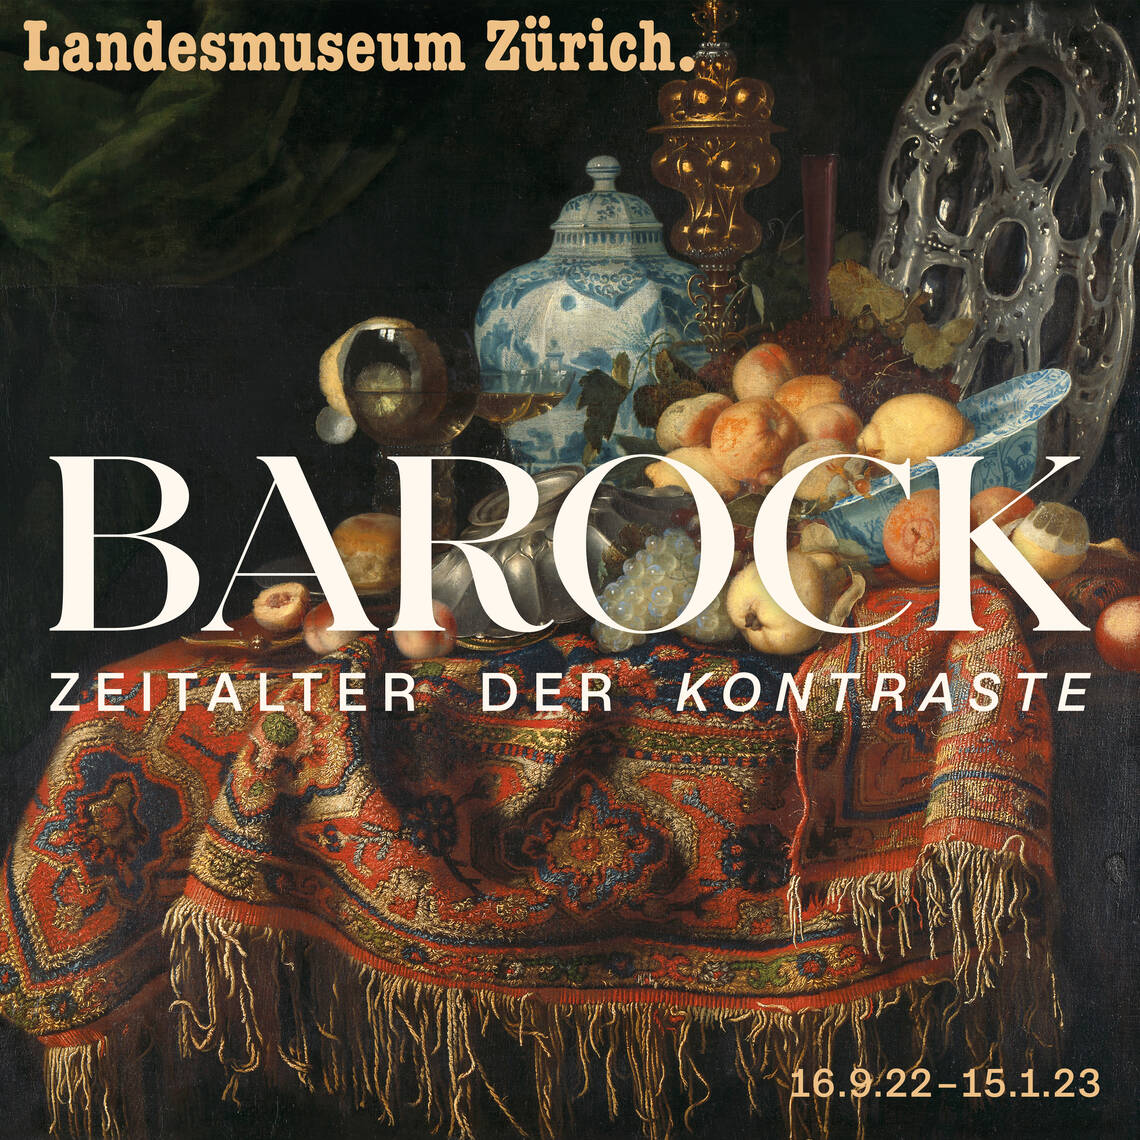 Visuel clé de l'exposition "Baroque. L'âge des contrastes".